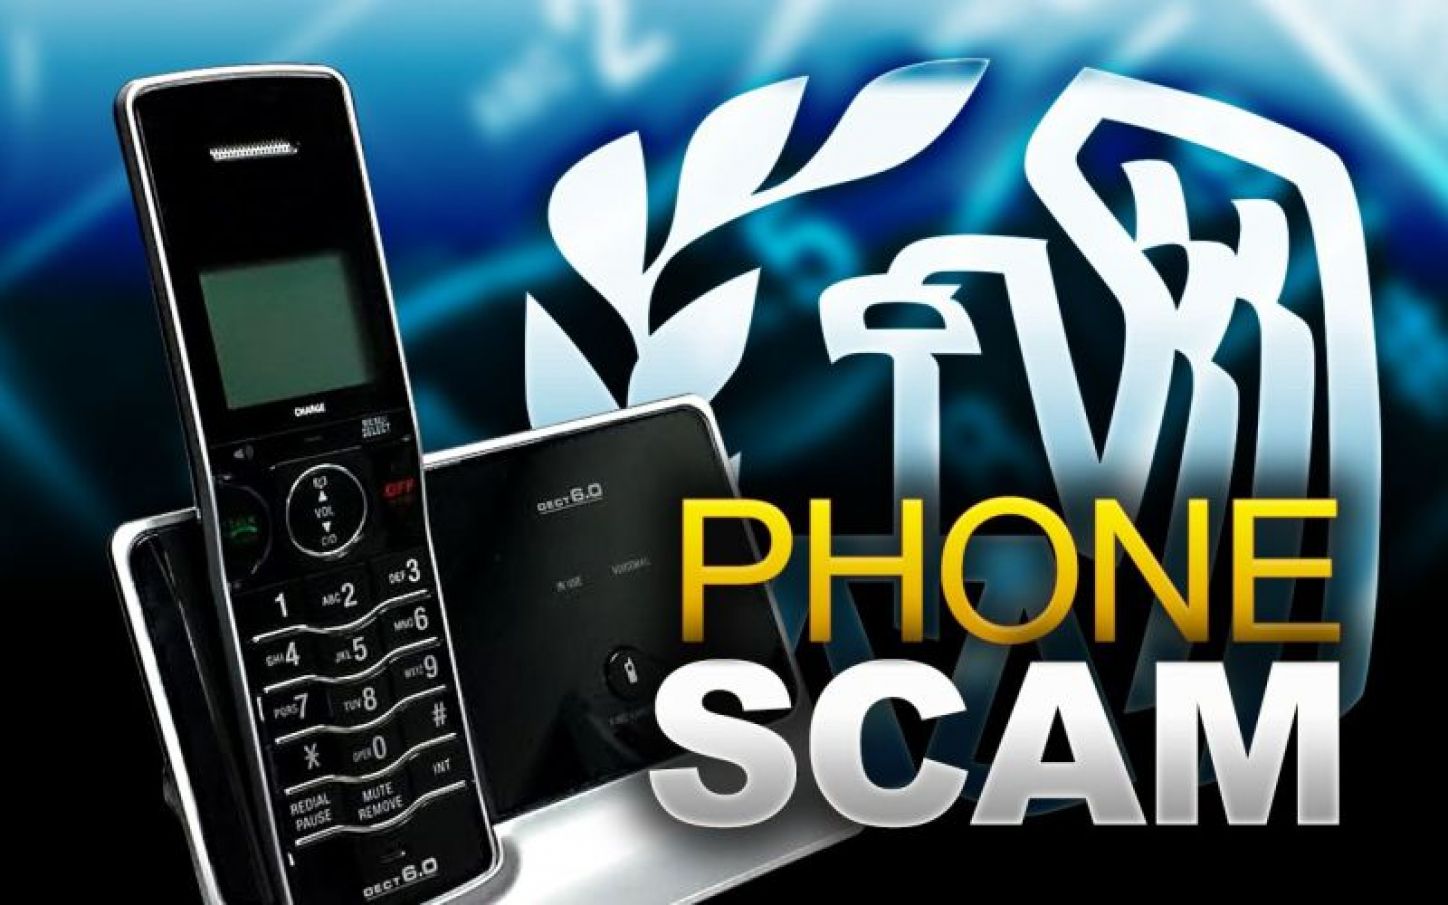 phone scam